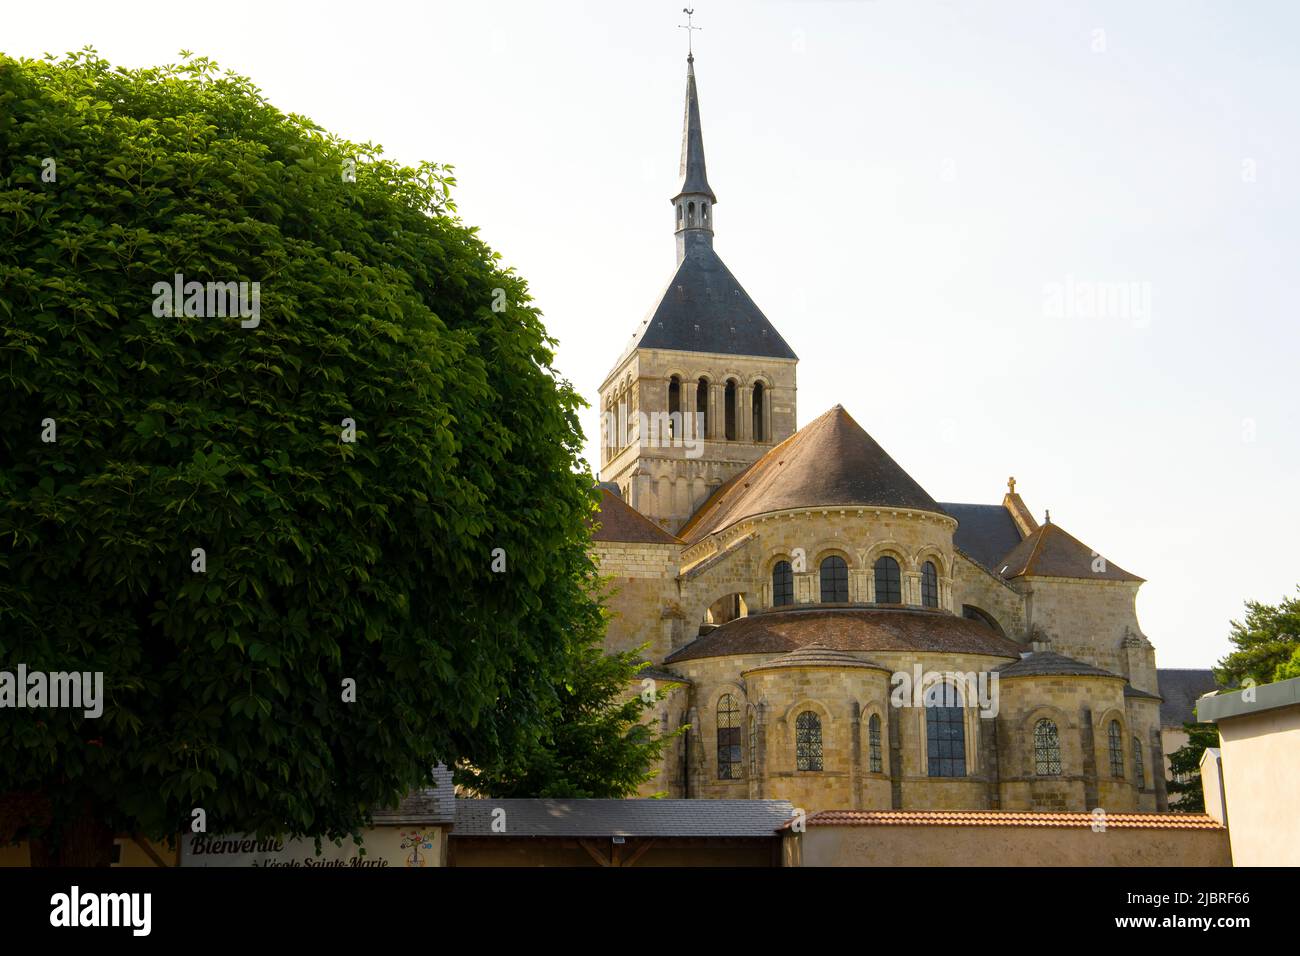 The Romanesque Abbey Church of St Benoit sur Loire (Abbaye de Fleury). Loiret department in north-central France. Stock Photo